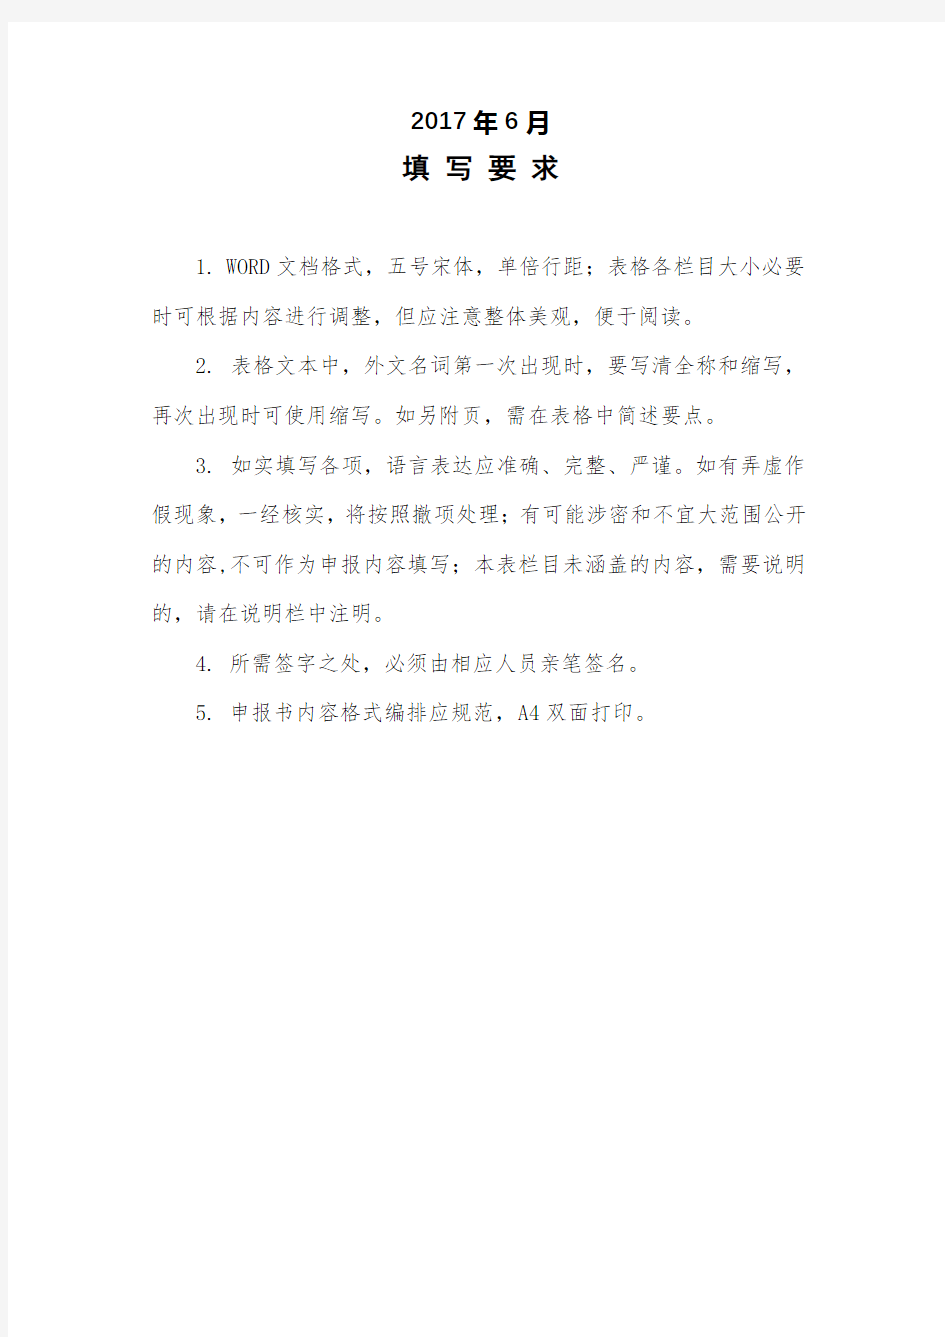 上海电机学院年度课程思政项目建设申报书【模板】